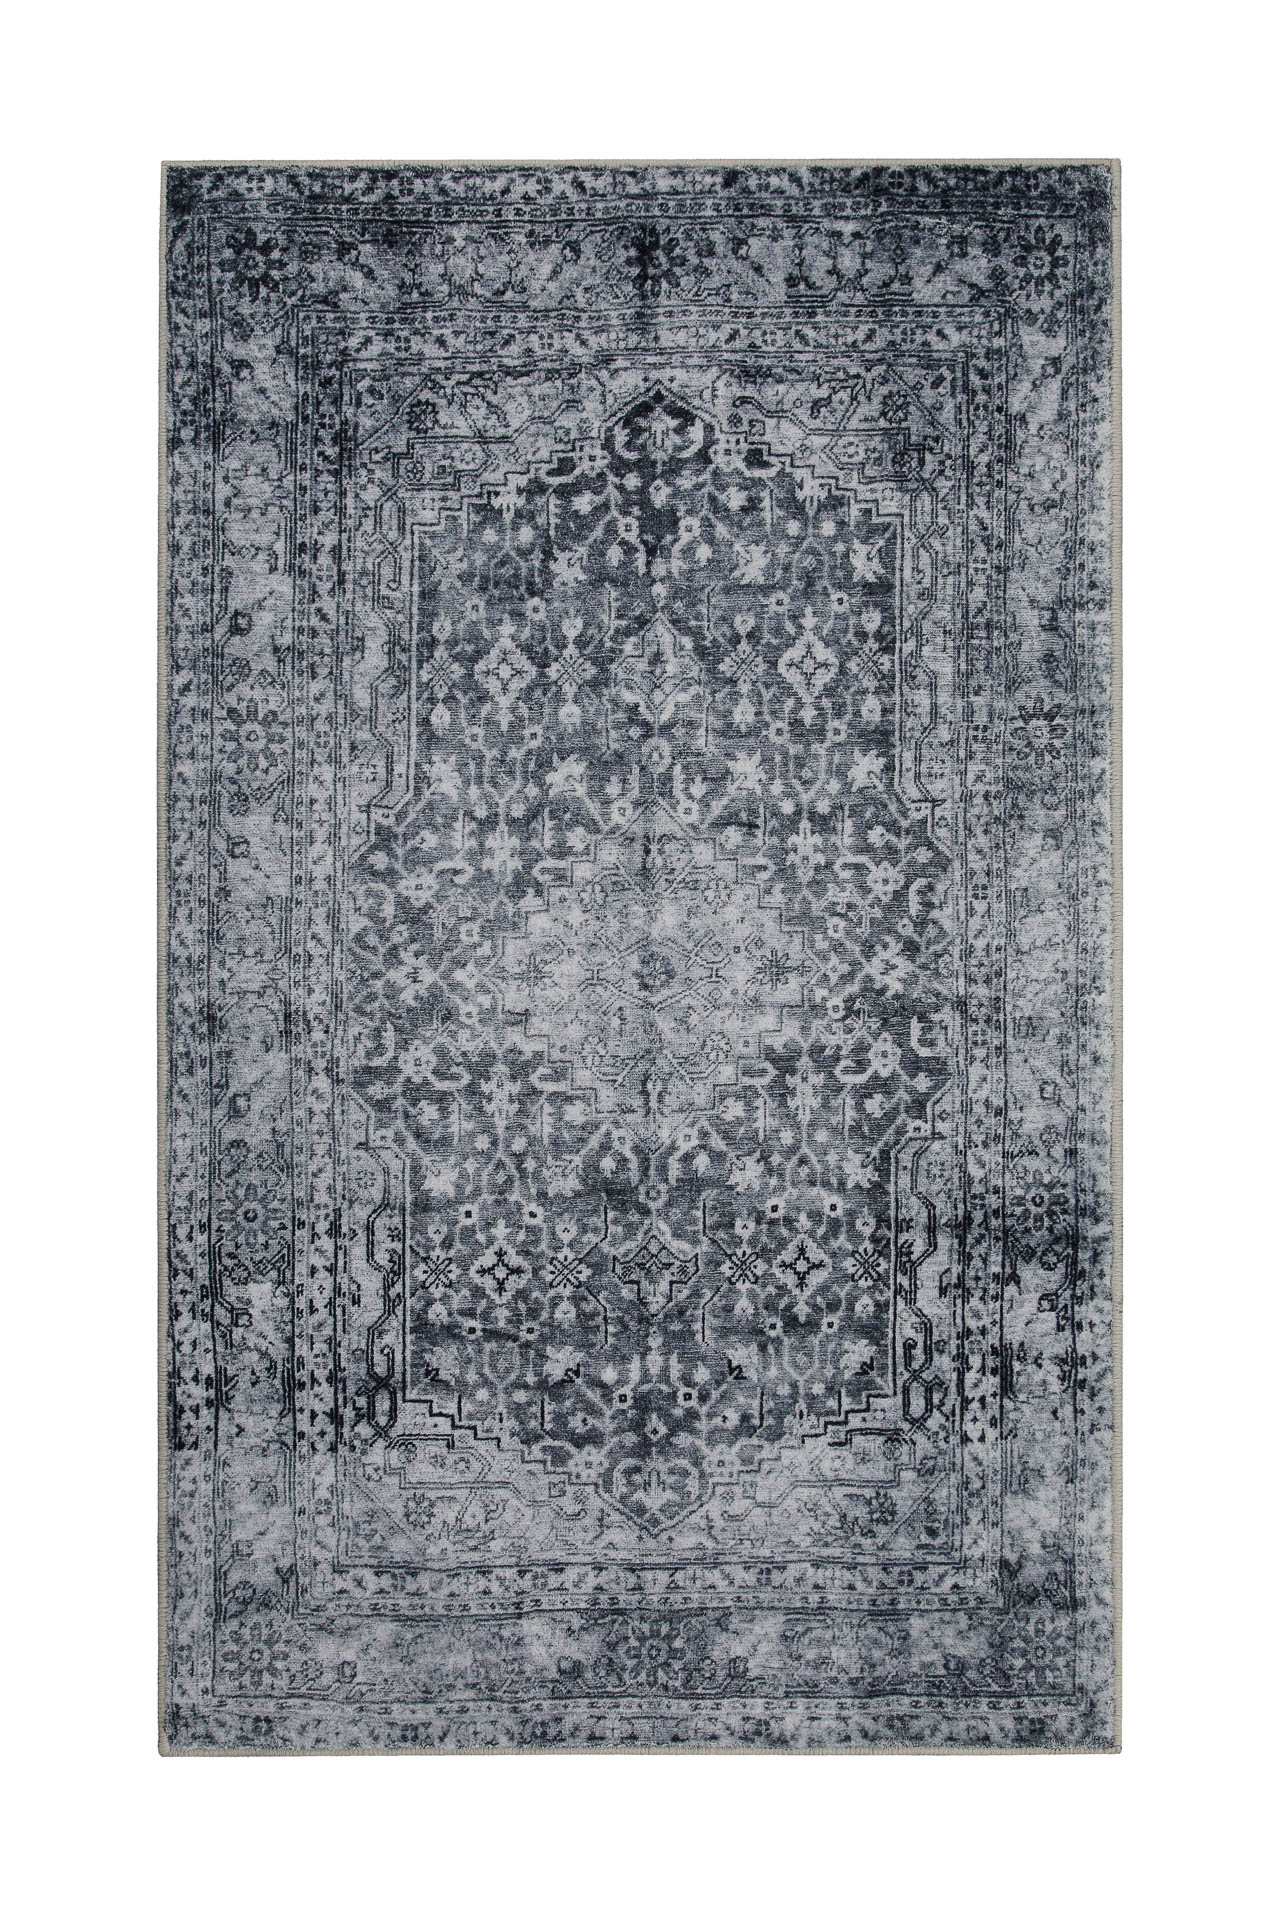 tapis de bain gris avec impression numérique 80x150